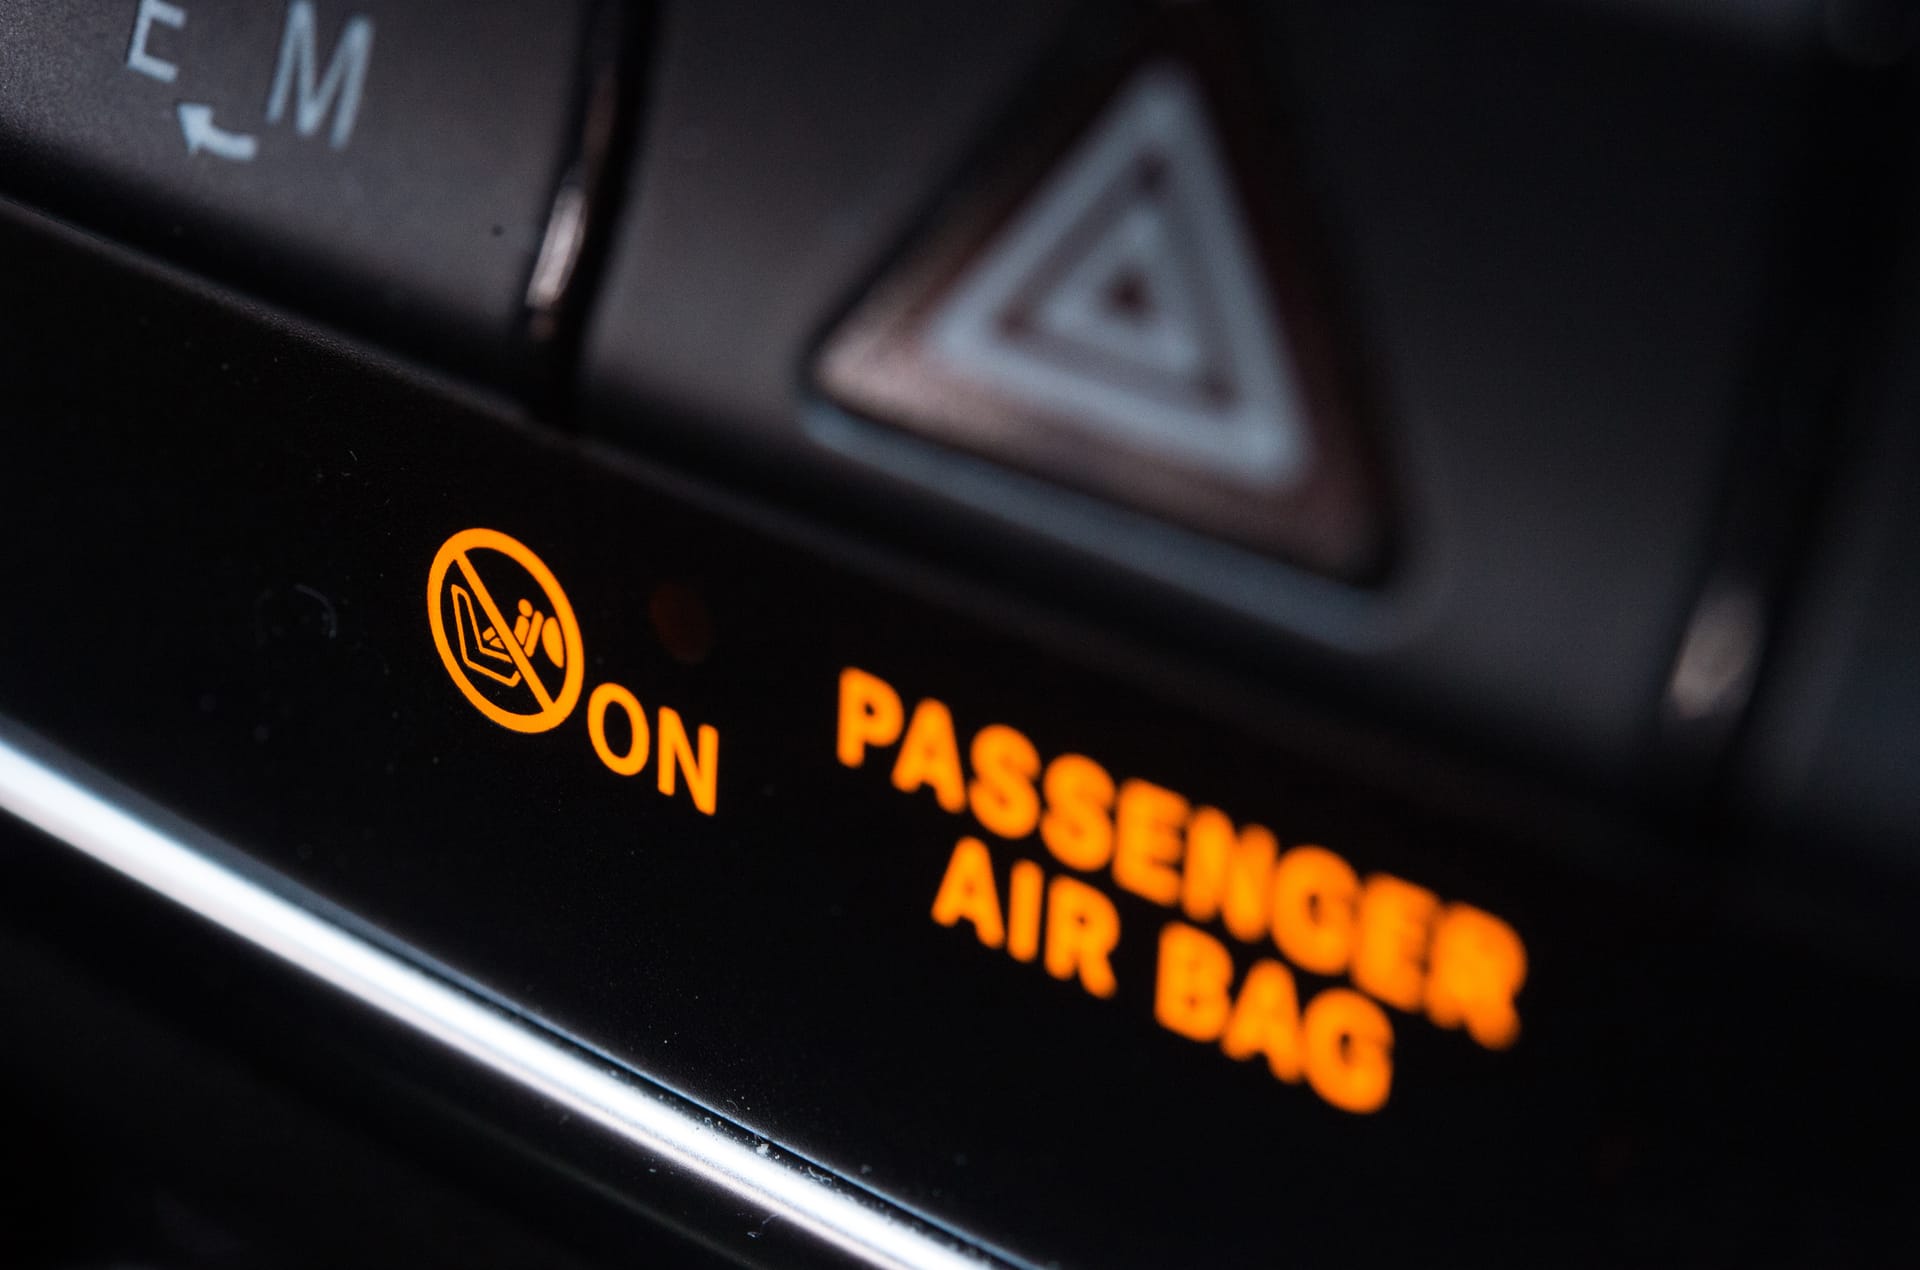 Fährt ein Kind in der Babyschale auf dem Beifahrersitz mit, muss der Airbag dort aus Sicherheitsgründen abgeschaltet sein.